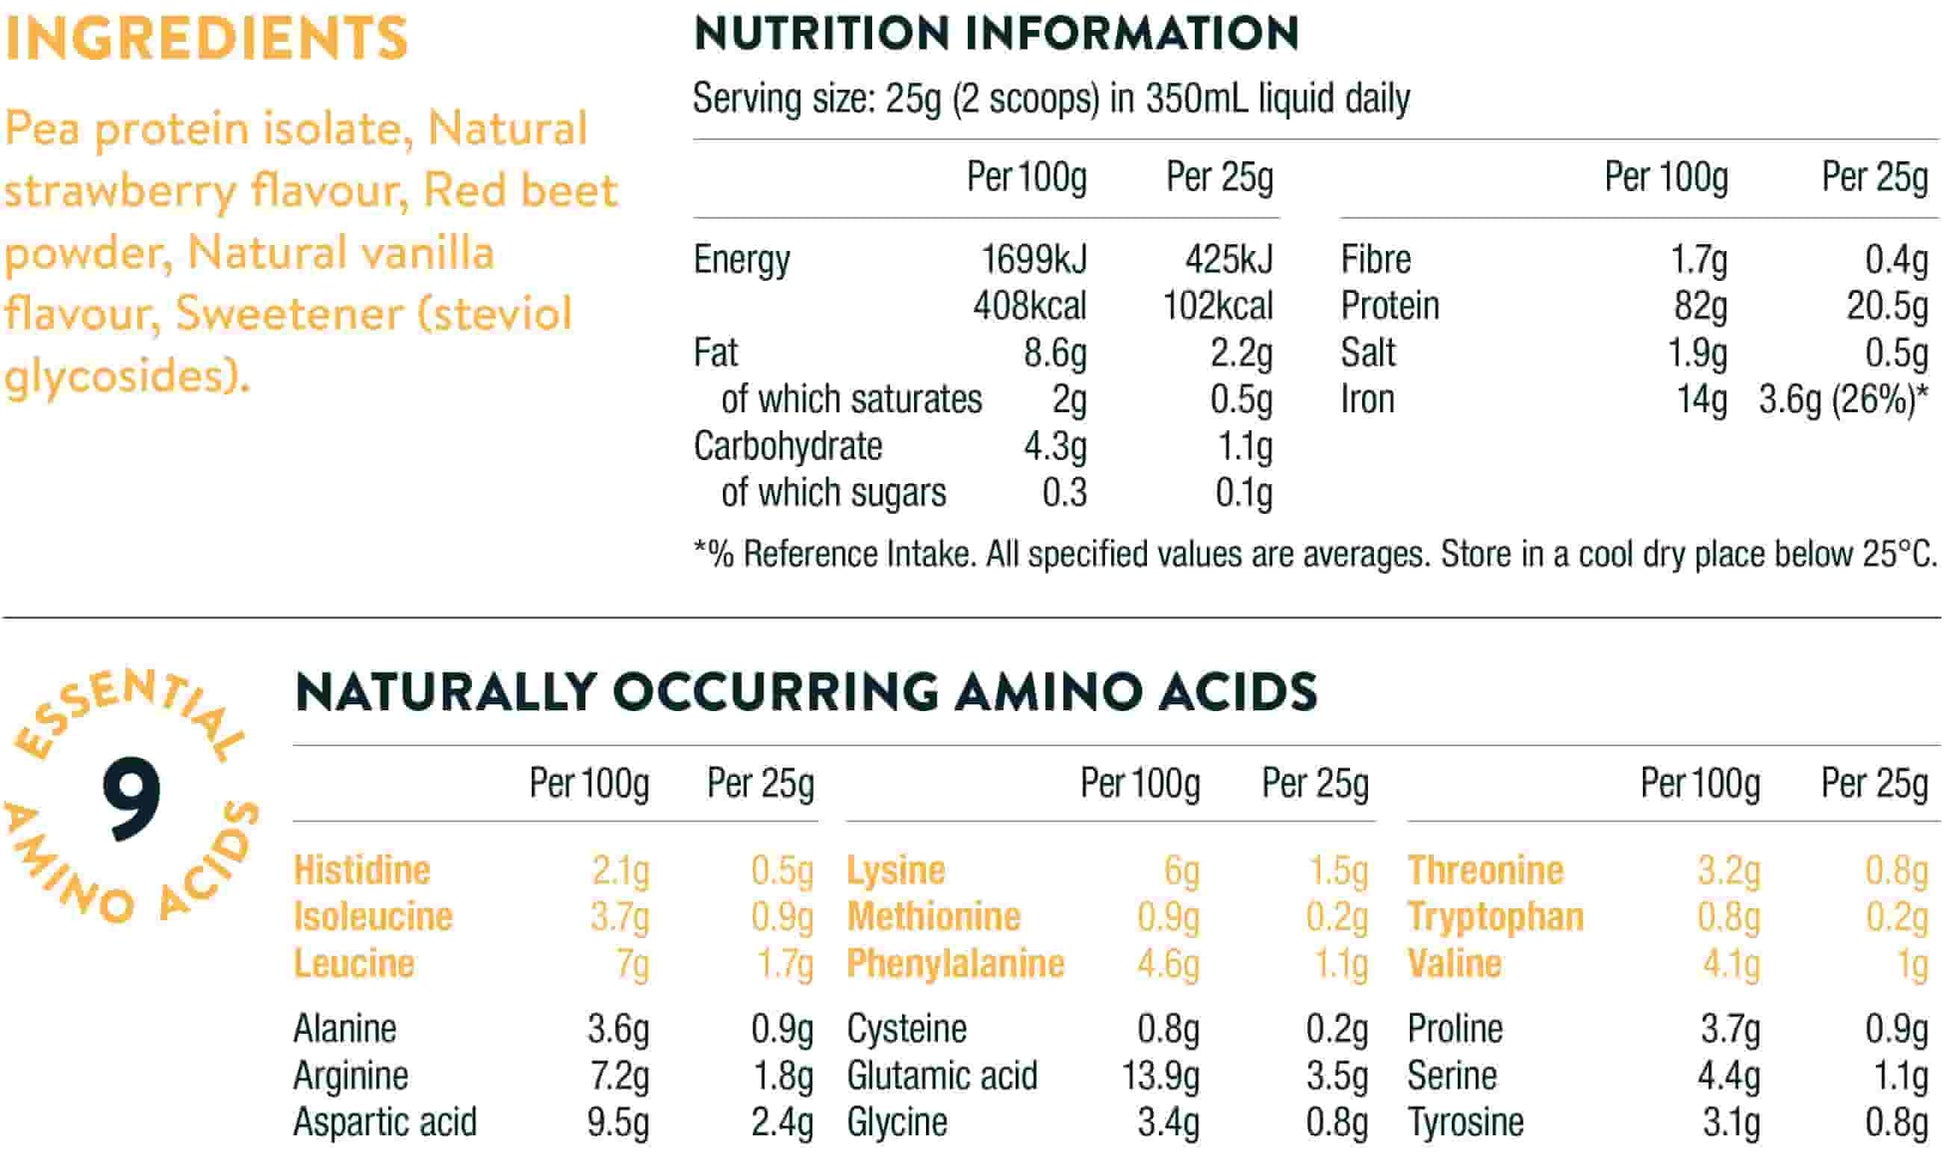 Nuzest Clean Lean Protein Dietary Supplement, Wild Strawberry - 17.6 oz tub